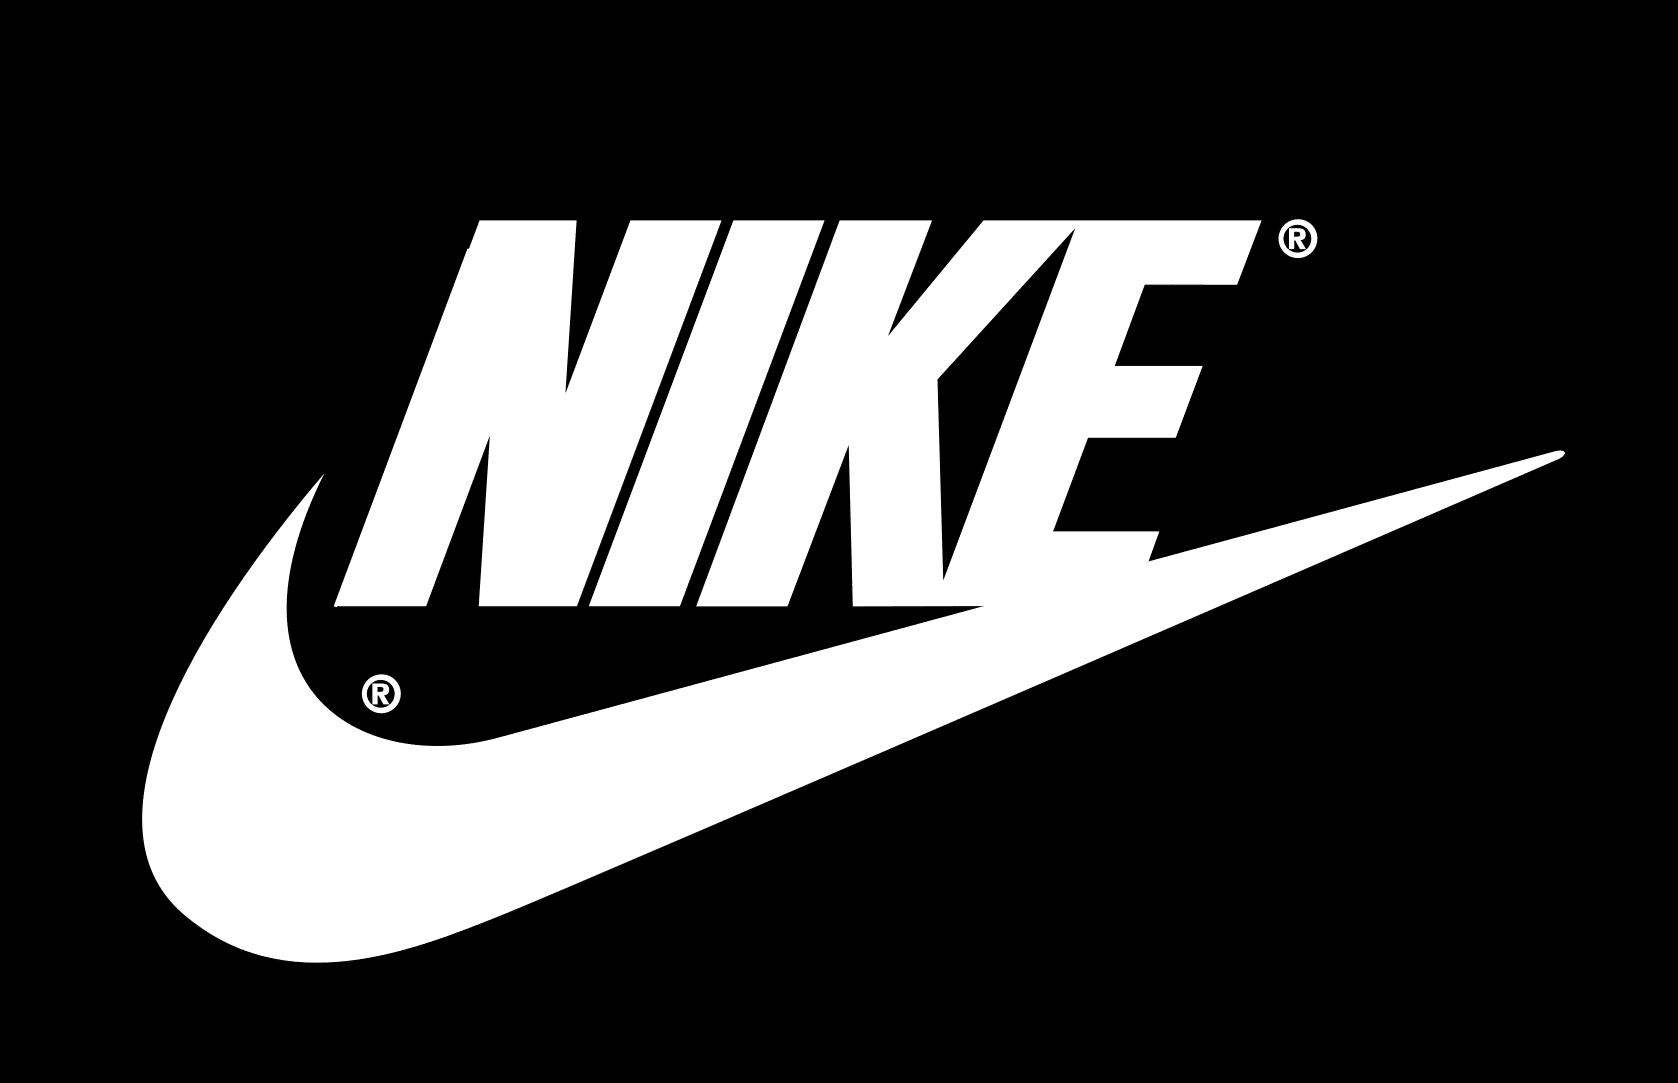 global Entretener seguro Logo Nike và lịch sử biểu tượng thời trang thể thao hàng đầu thế giới từ  1964